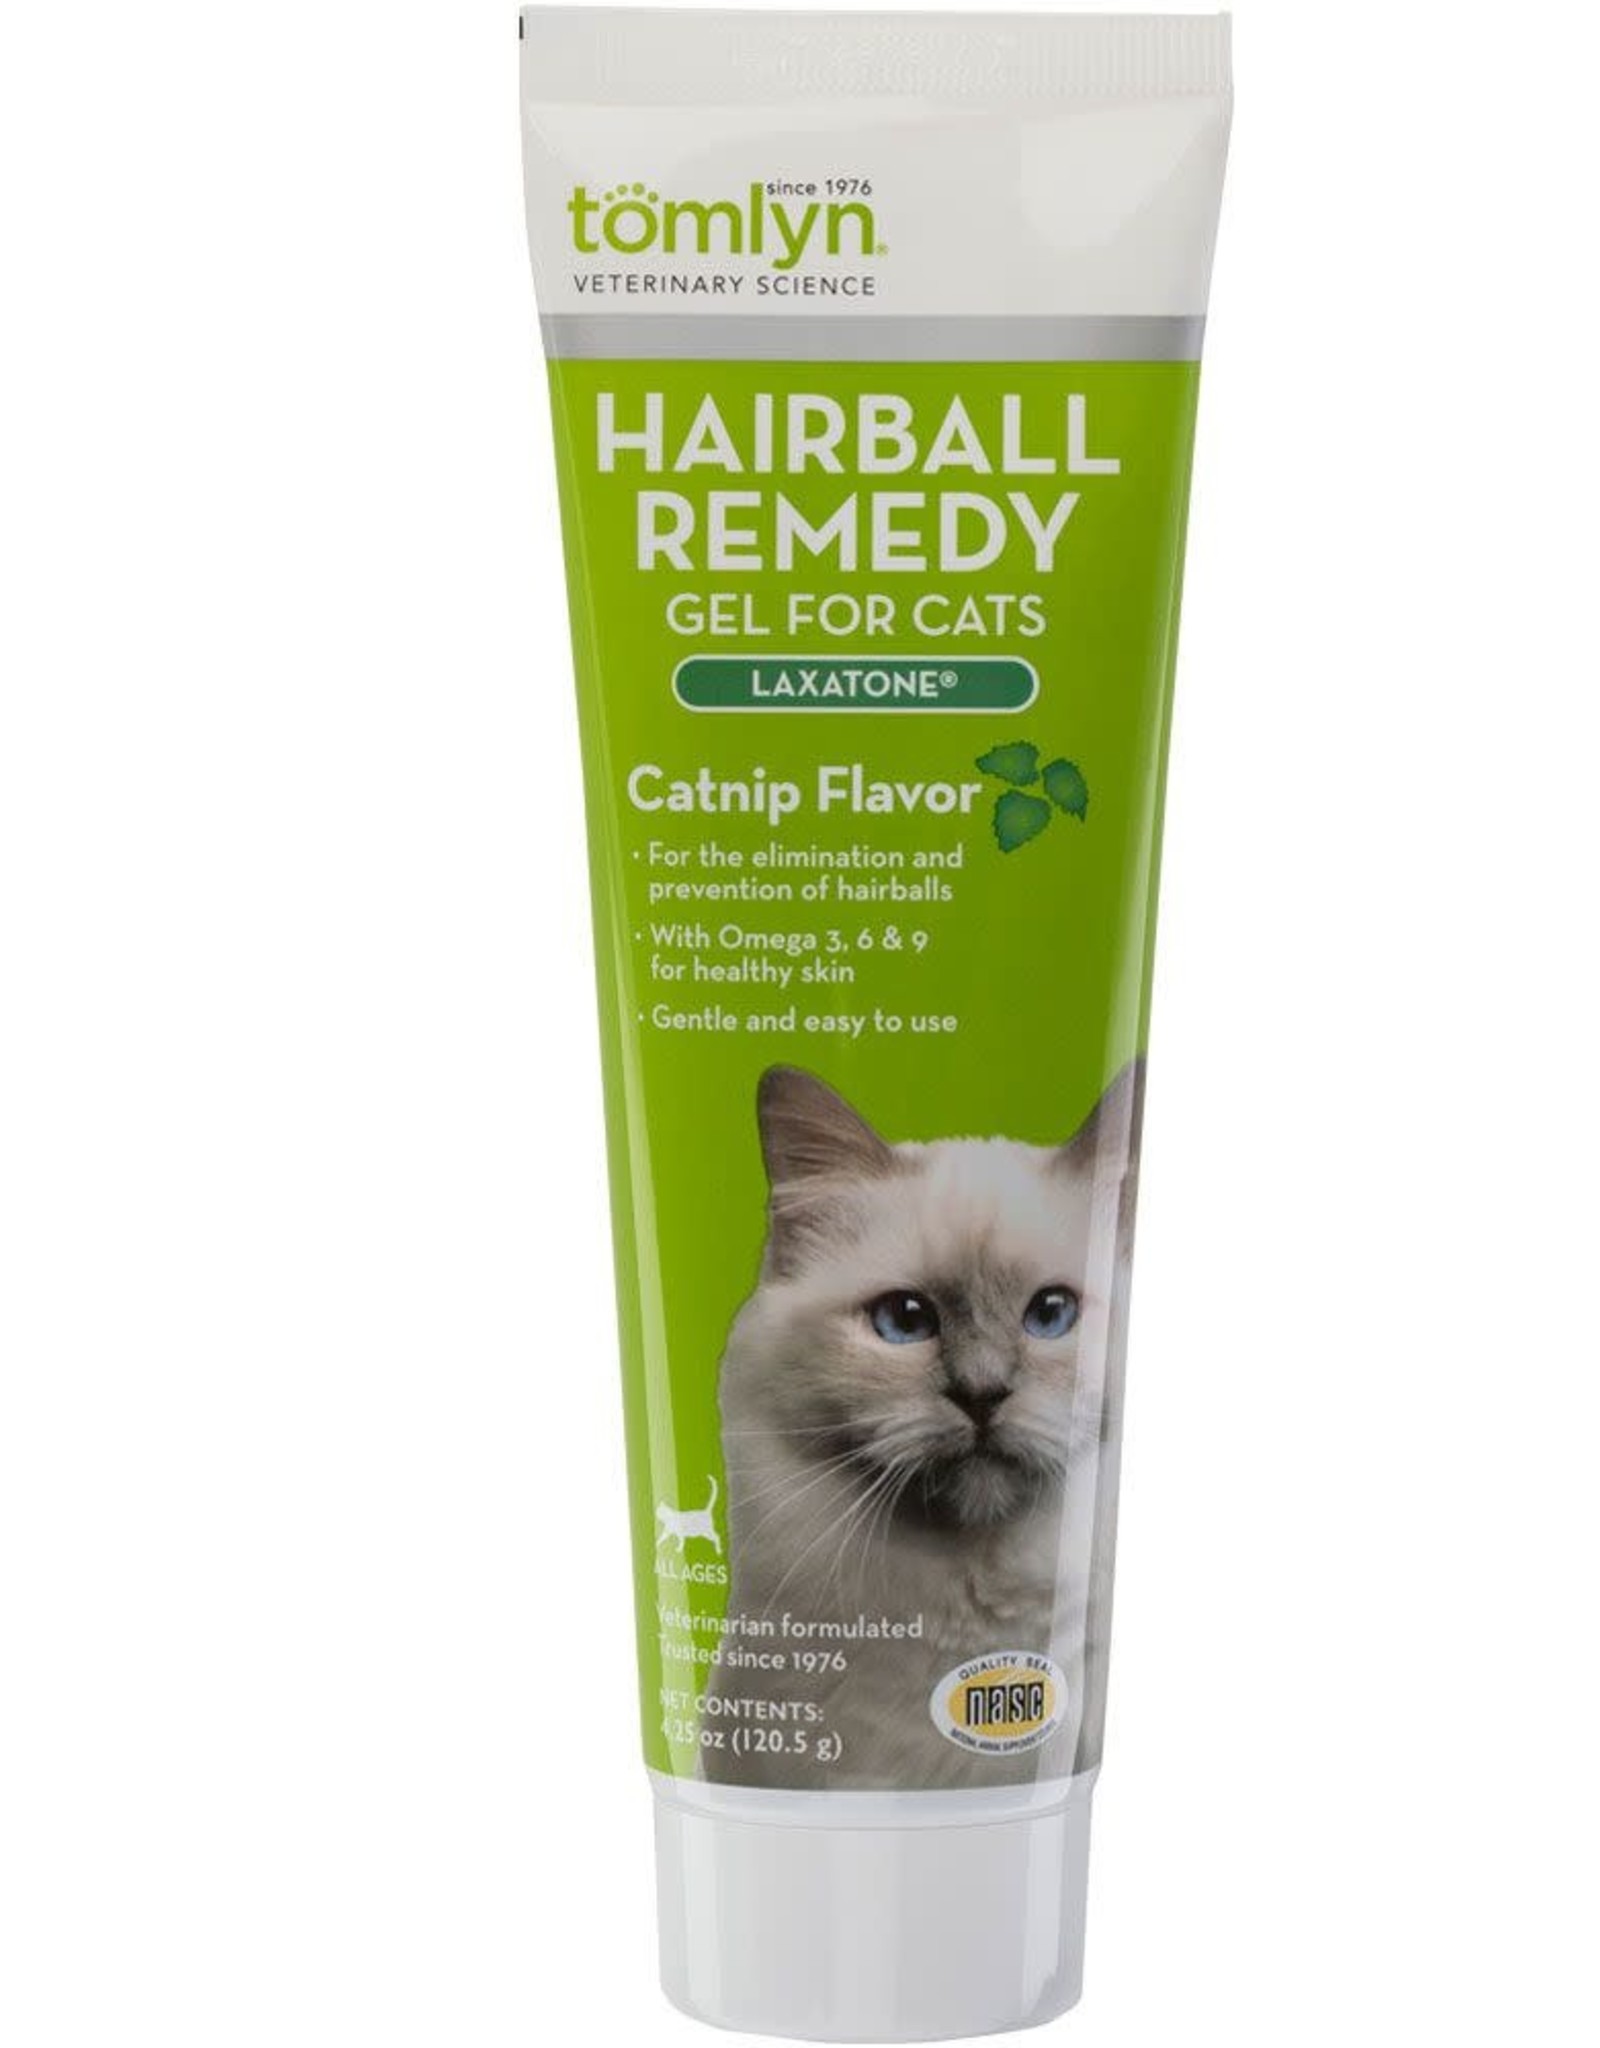 TOMLYN Tomlyn Laxatone Hairball Remedy Catnip Flavor Gel Cat Supplement 4.25-oz tube